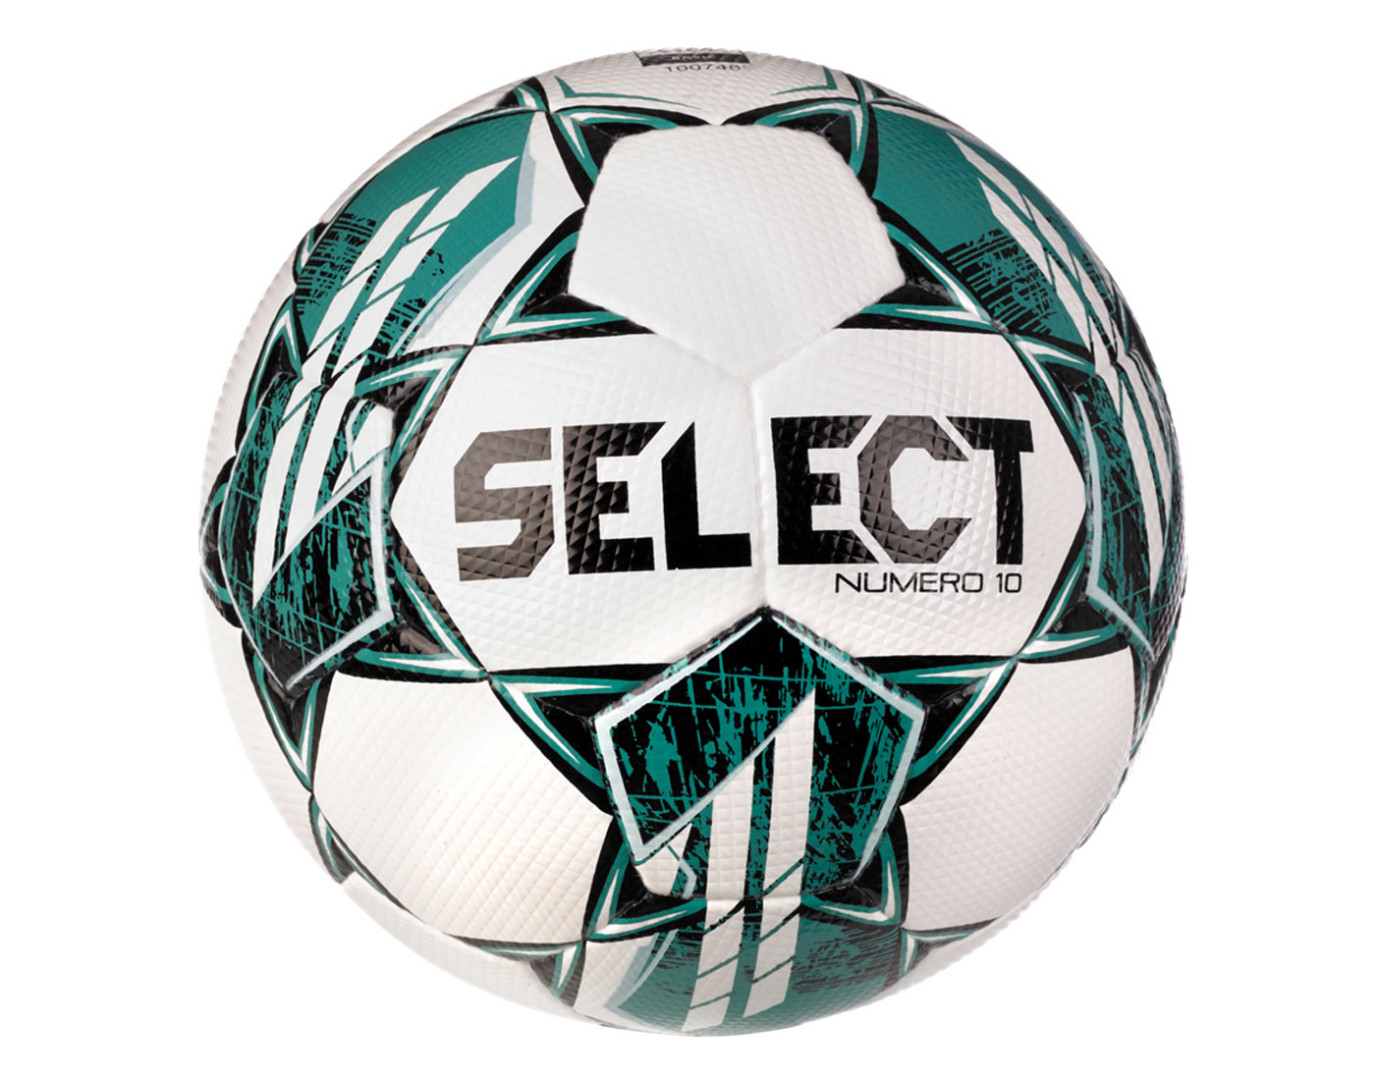 Fotbalový míč Select FB Numero 10 FIFA Basic bílo/tyrkysová vel.5